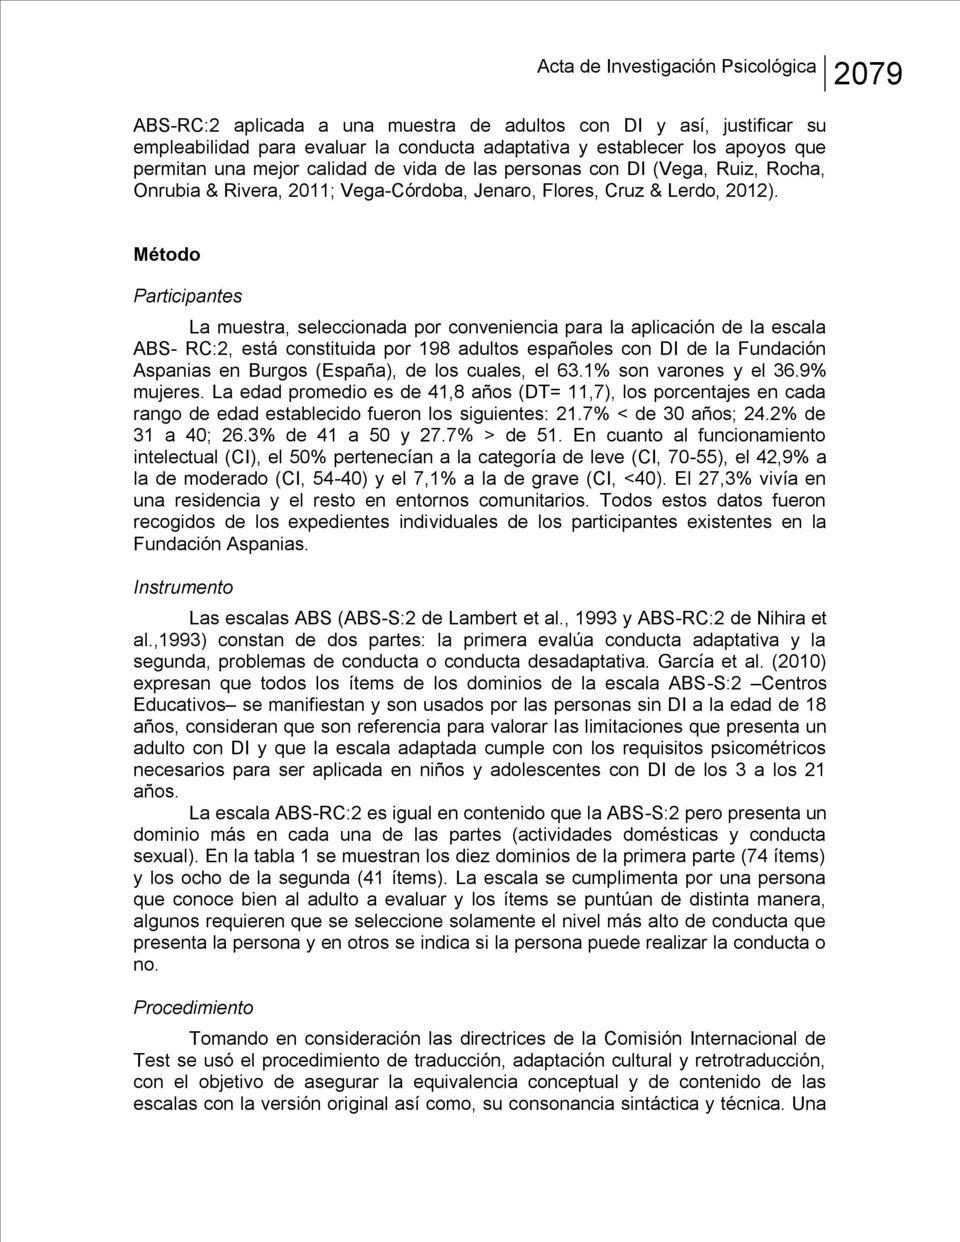 Método Participantes La muestra, seleccionada por conveniencia para la aplicación de la escala ABS- RC:2, está constituida por 198 adultos españoles con DI de la Fundación Aspanias en Burgos